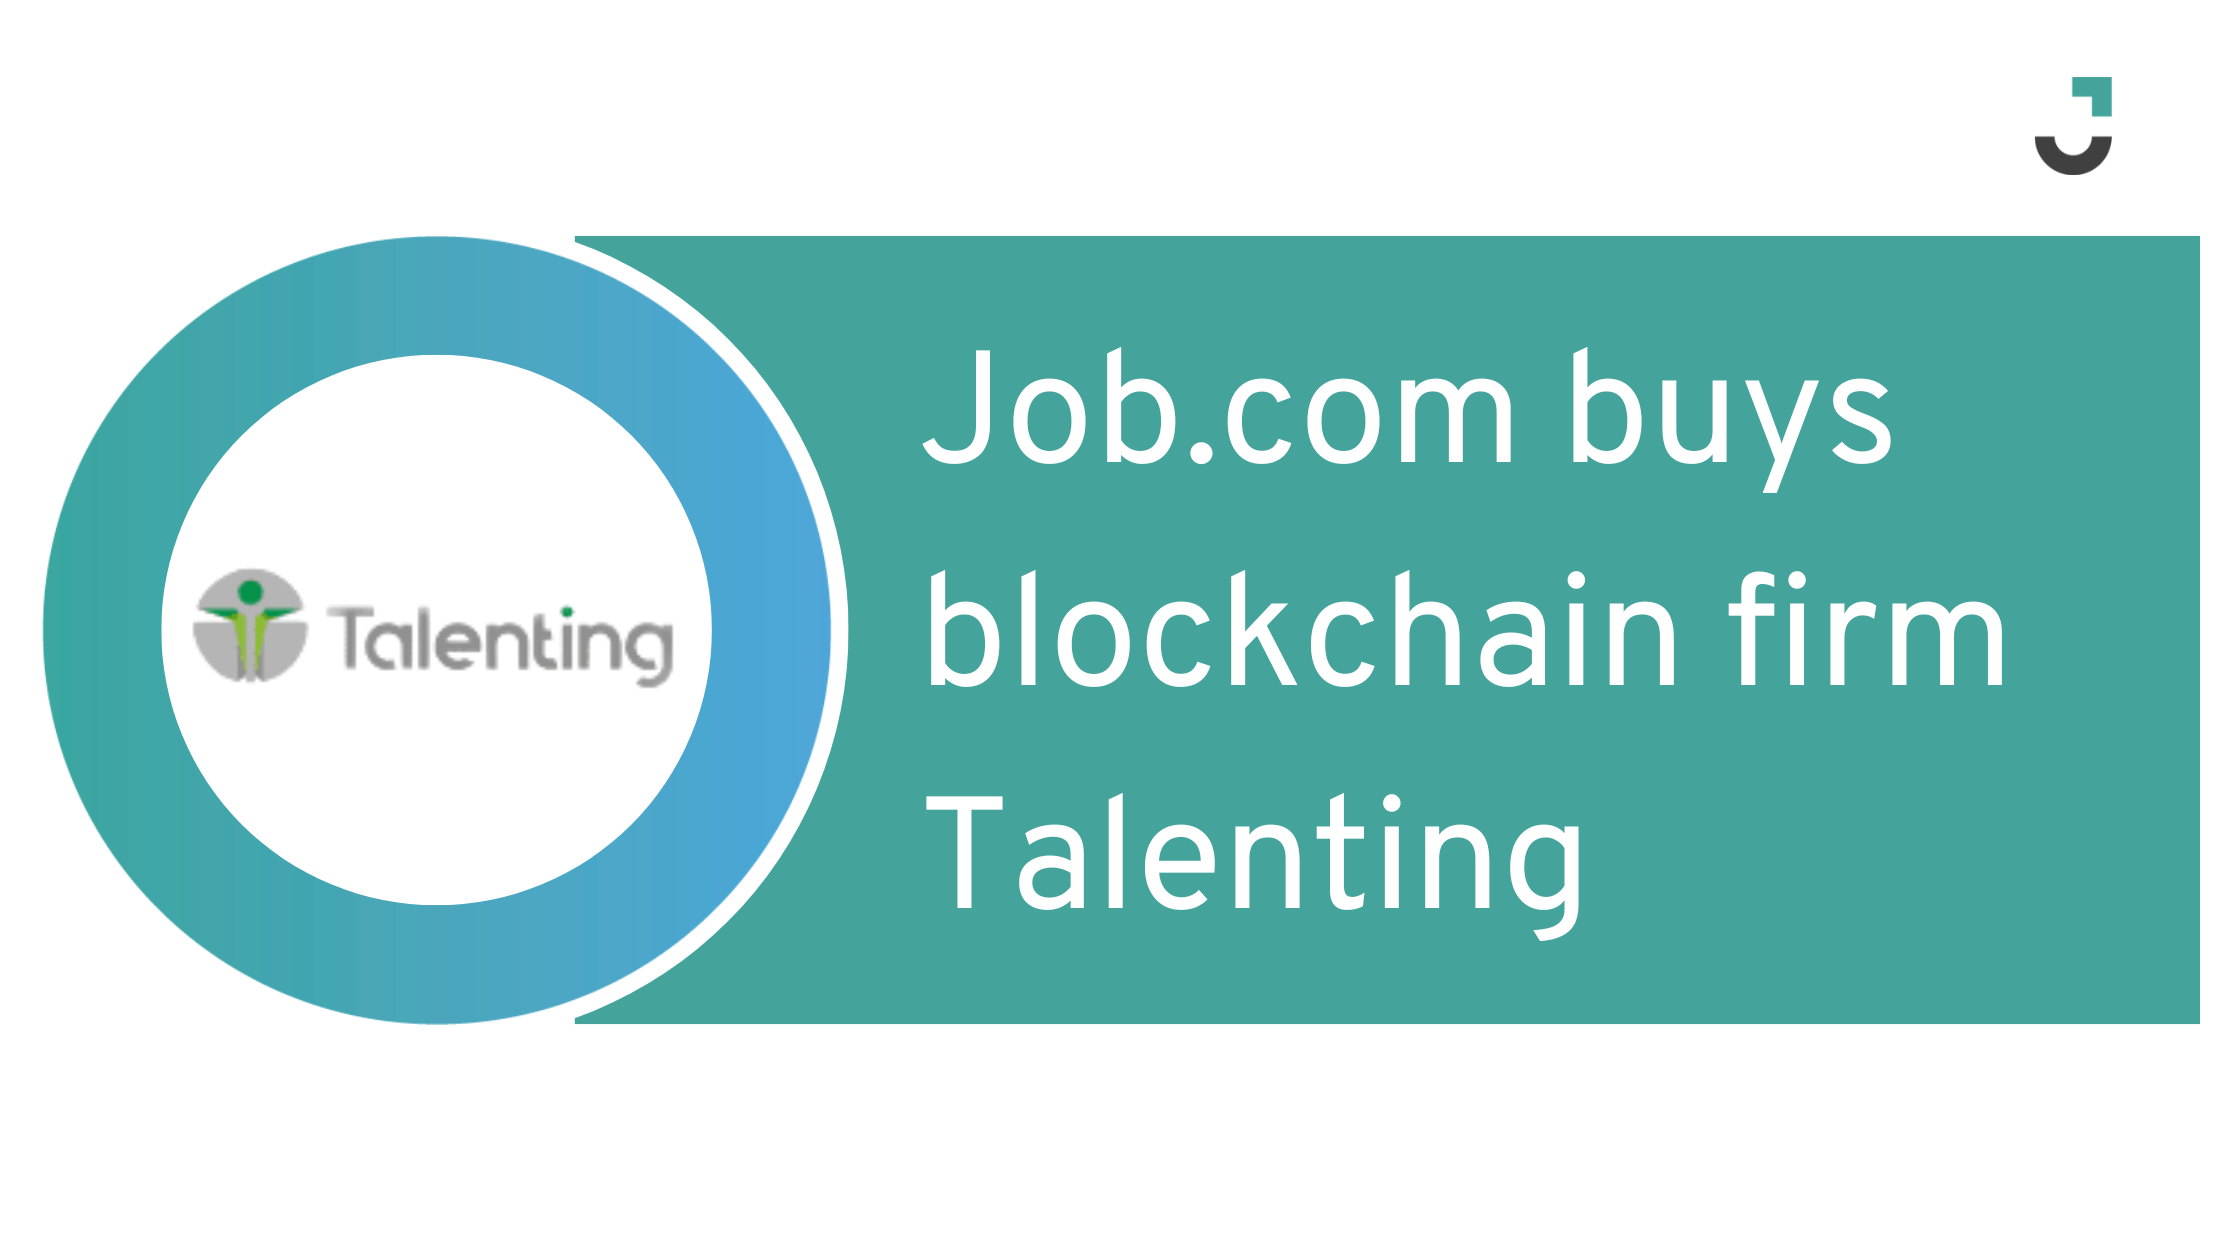 Job.com buys blockchain firm Talenting